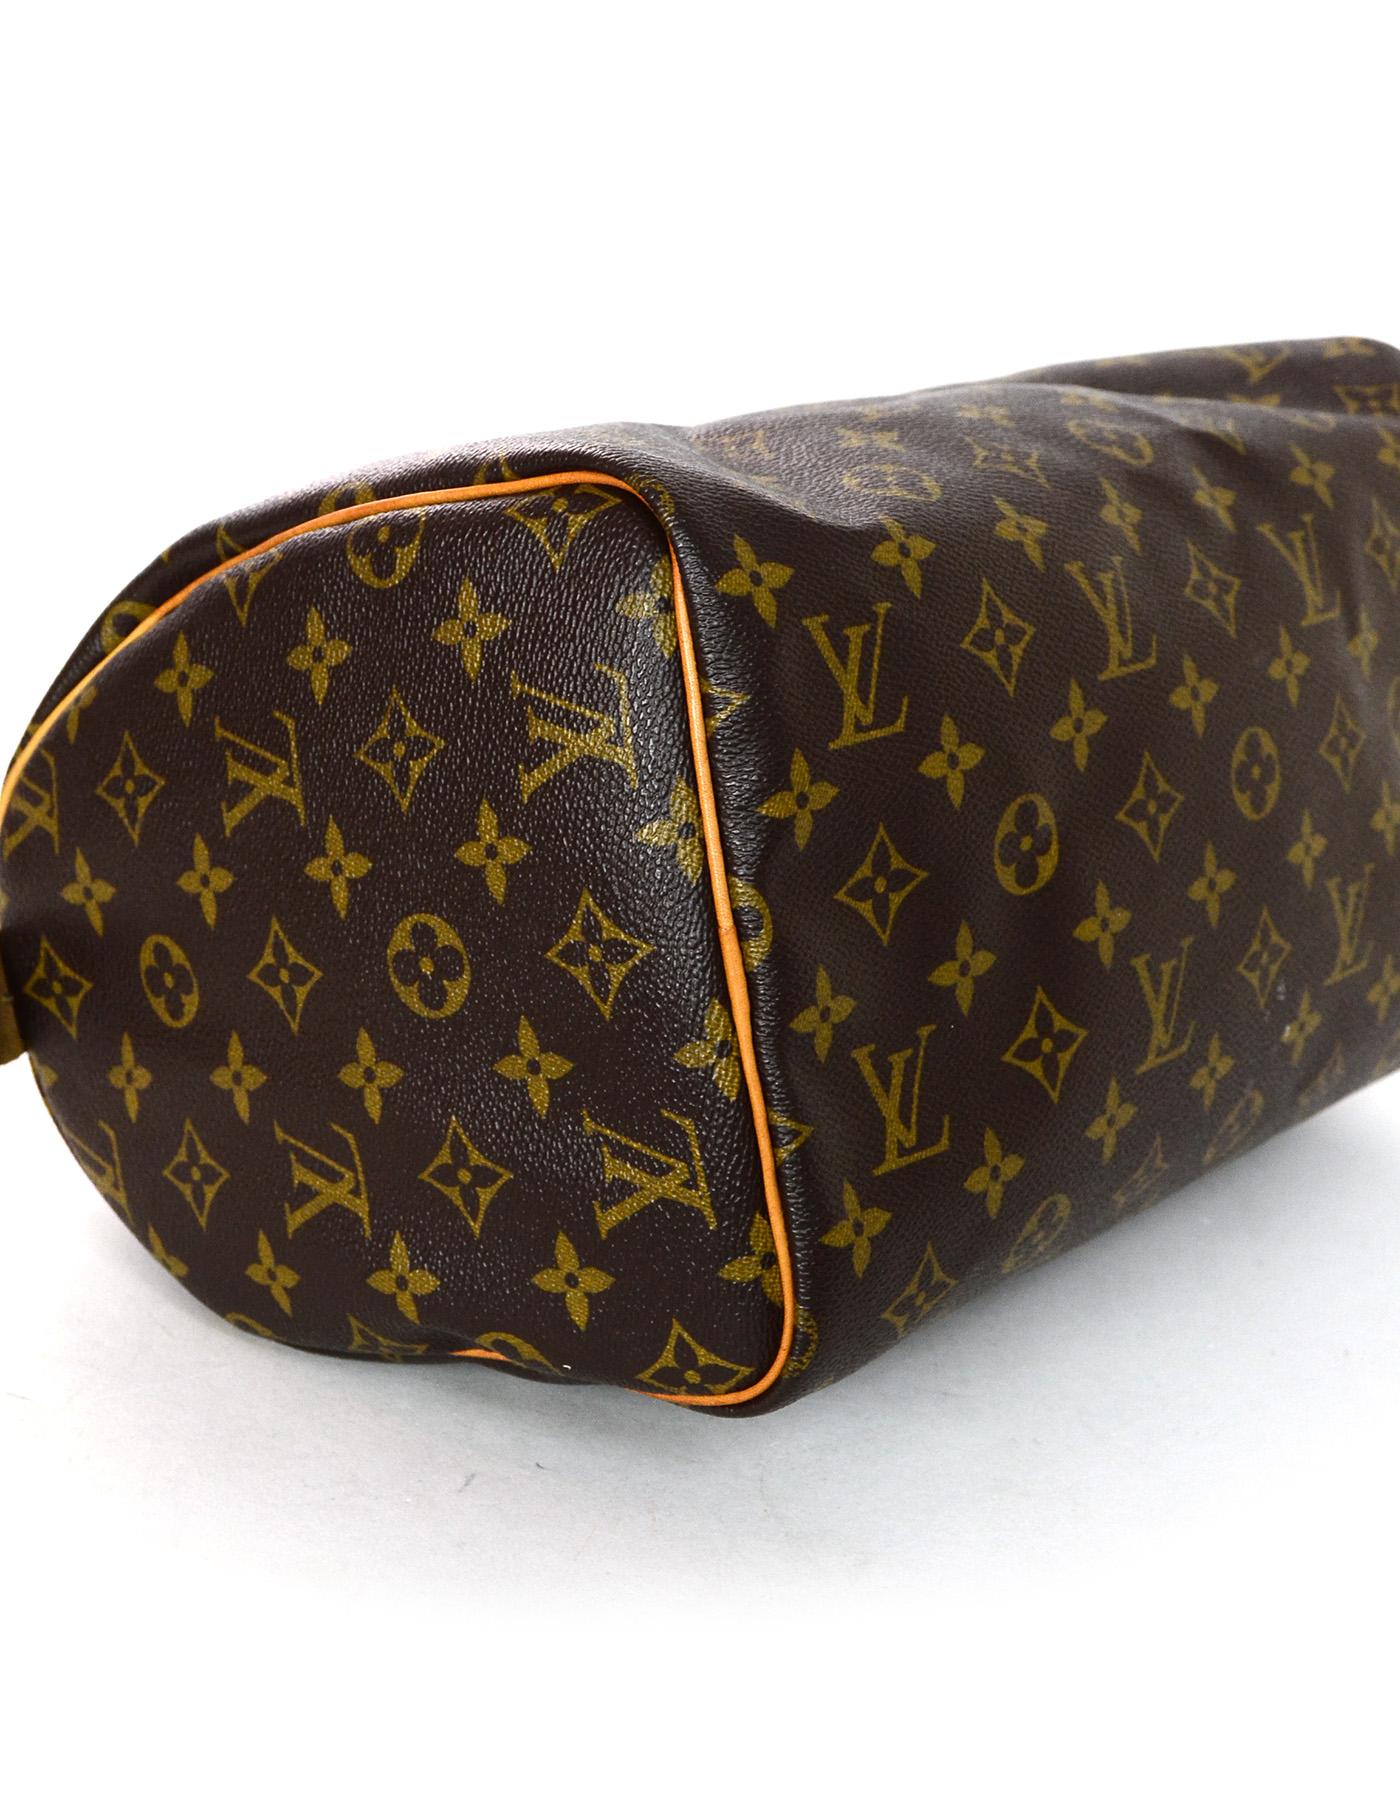 Black Louis Vuitton LV Monogram Speedy 30 Bag w/ Box and DB